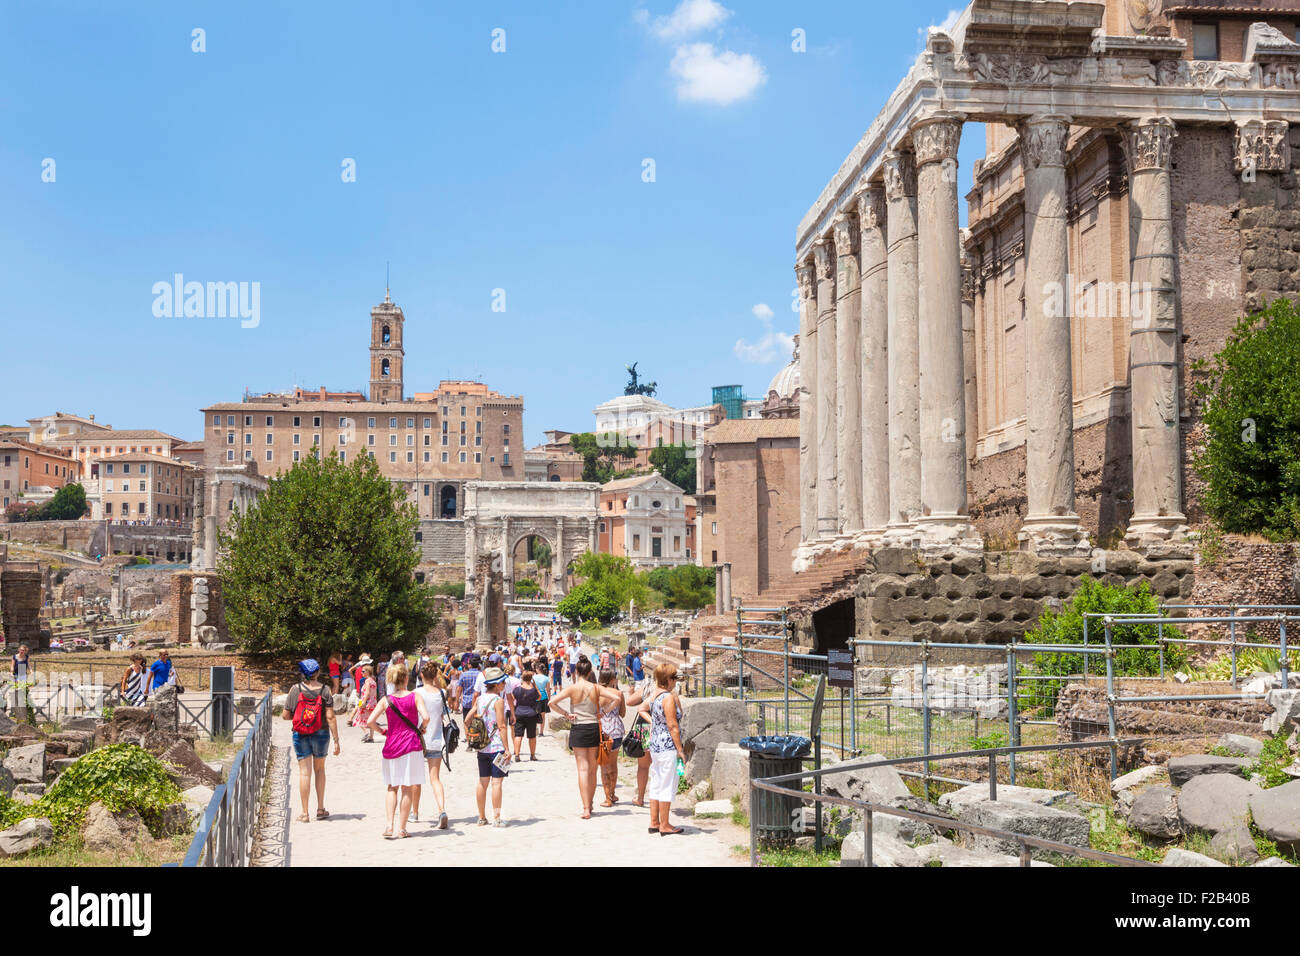 Le Temple d'Antonin et Faustine dans le Forum Romain Rome Italie Roma Lazio Italie Europe de l'UE Banque D'Images